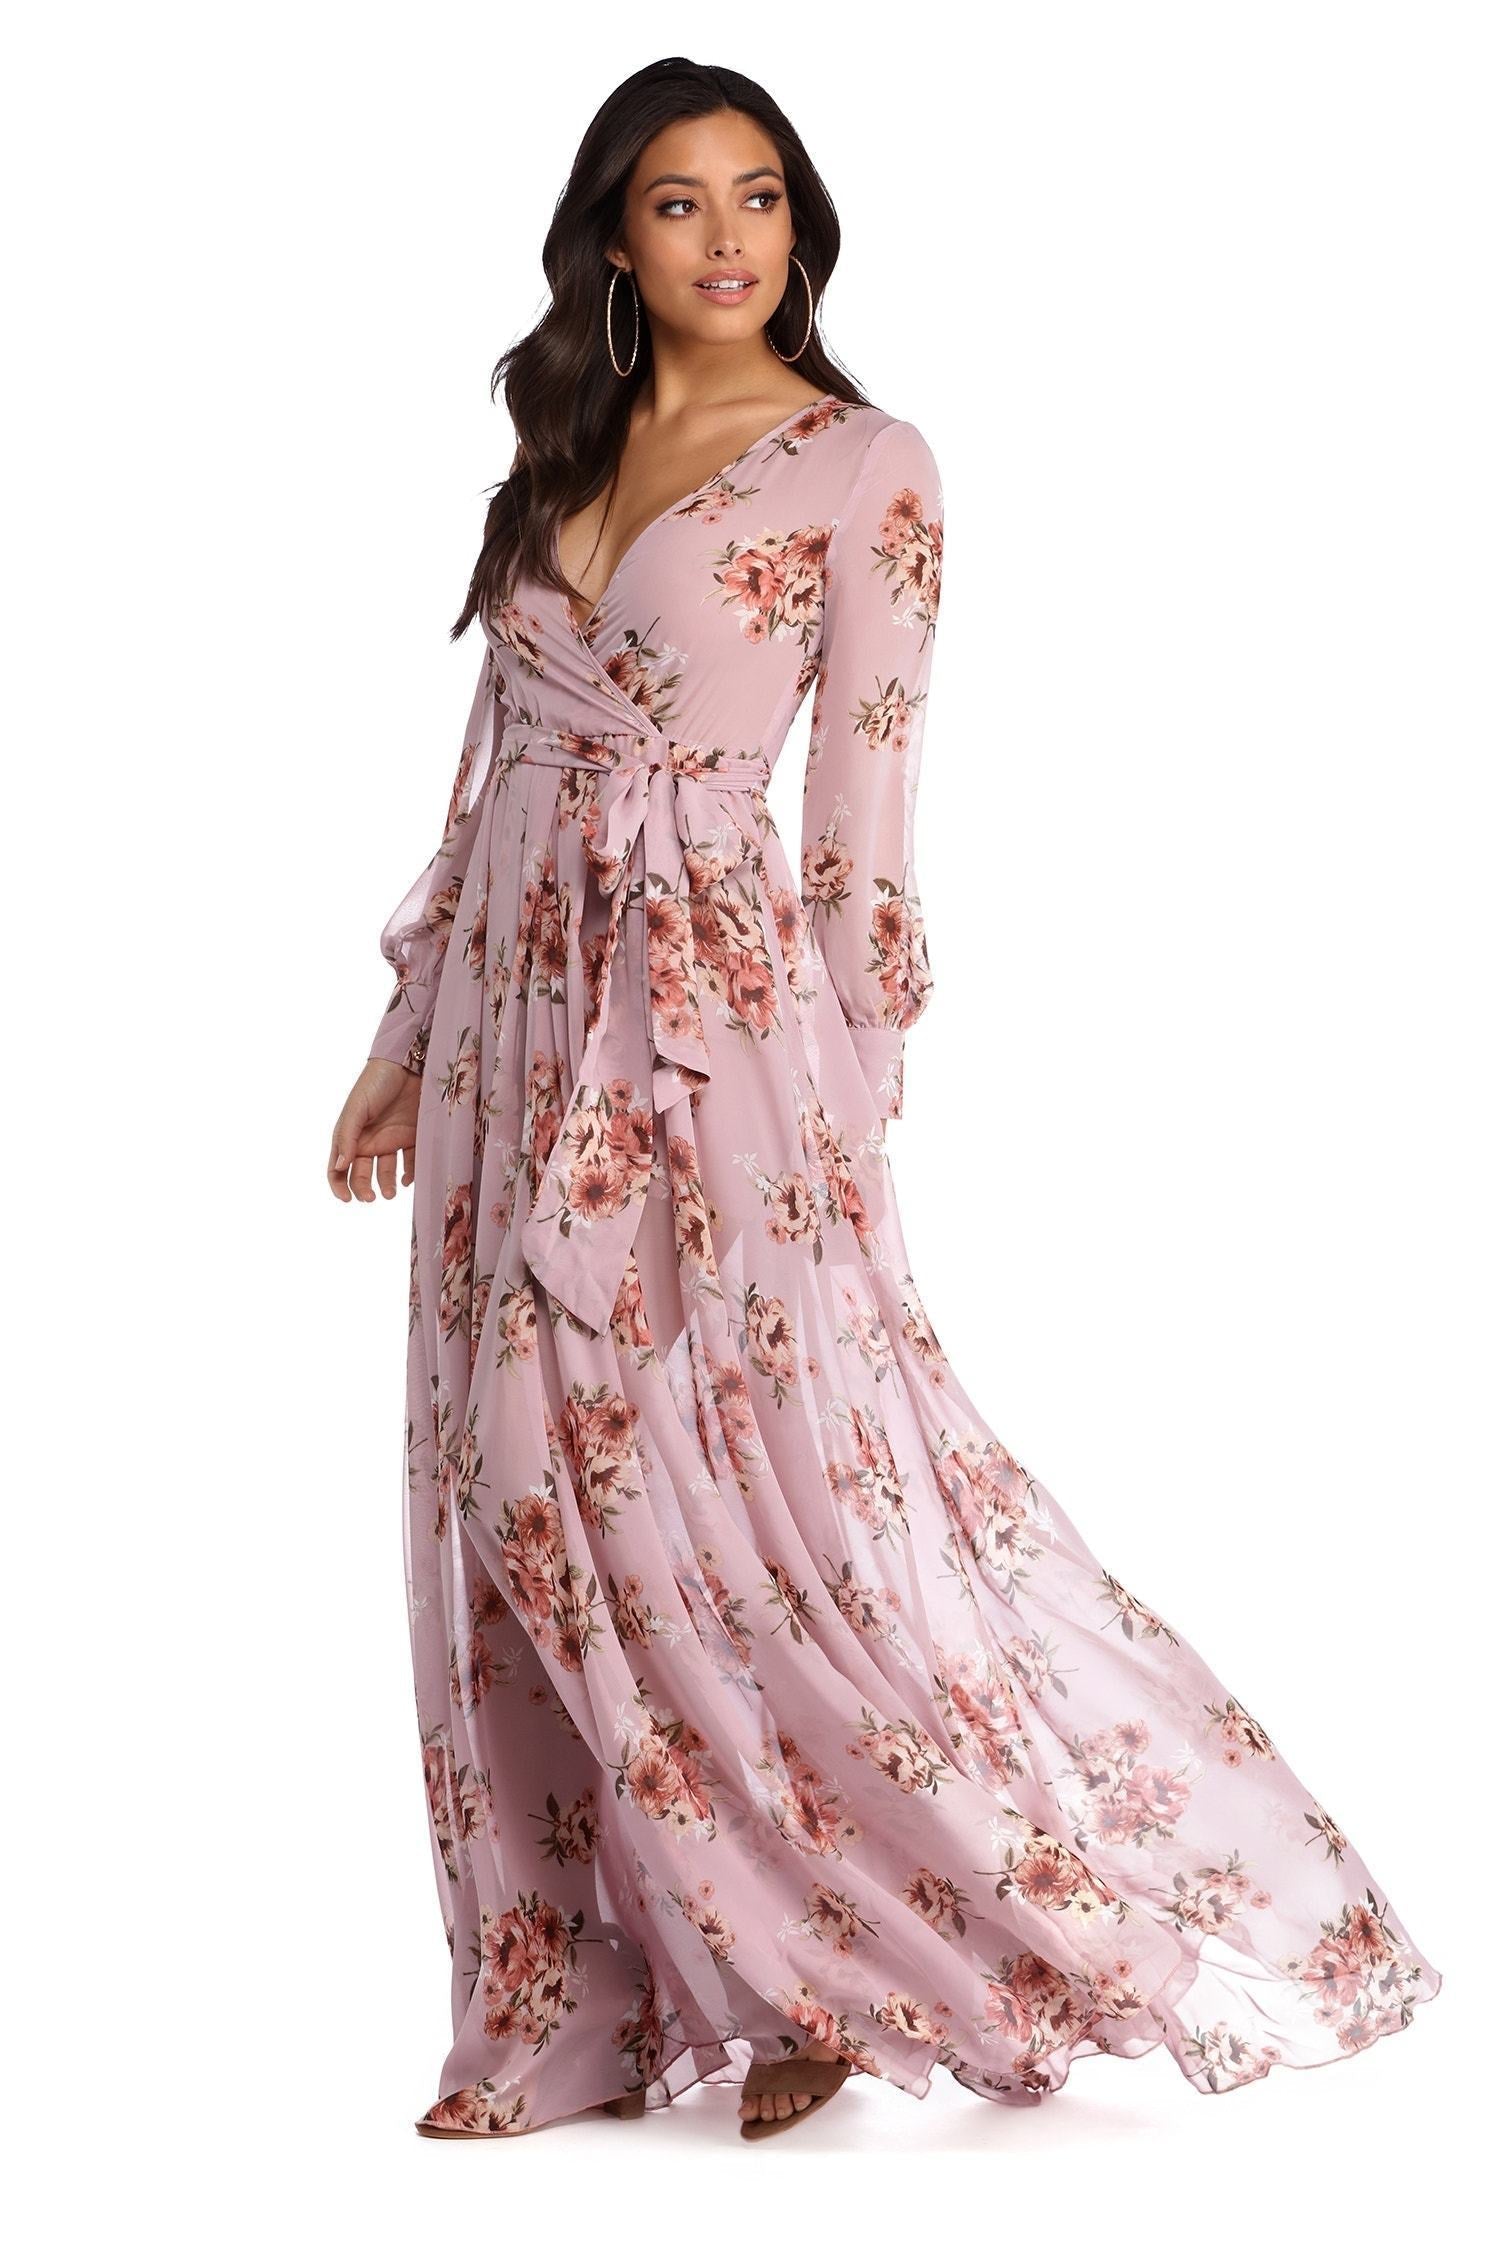 Jennifer Floral Wrap Chiffon Dress - Lady Occasions